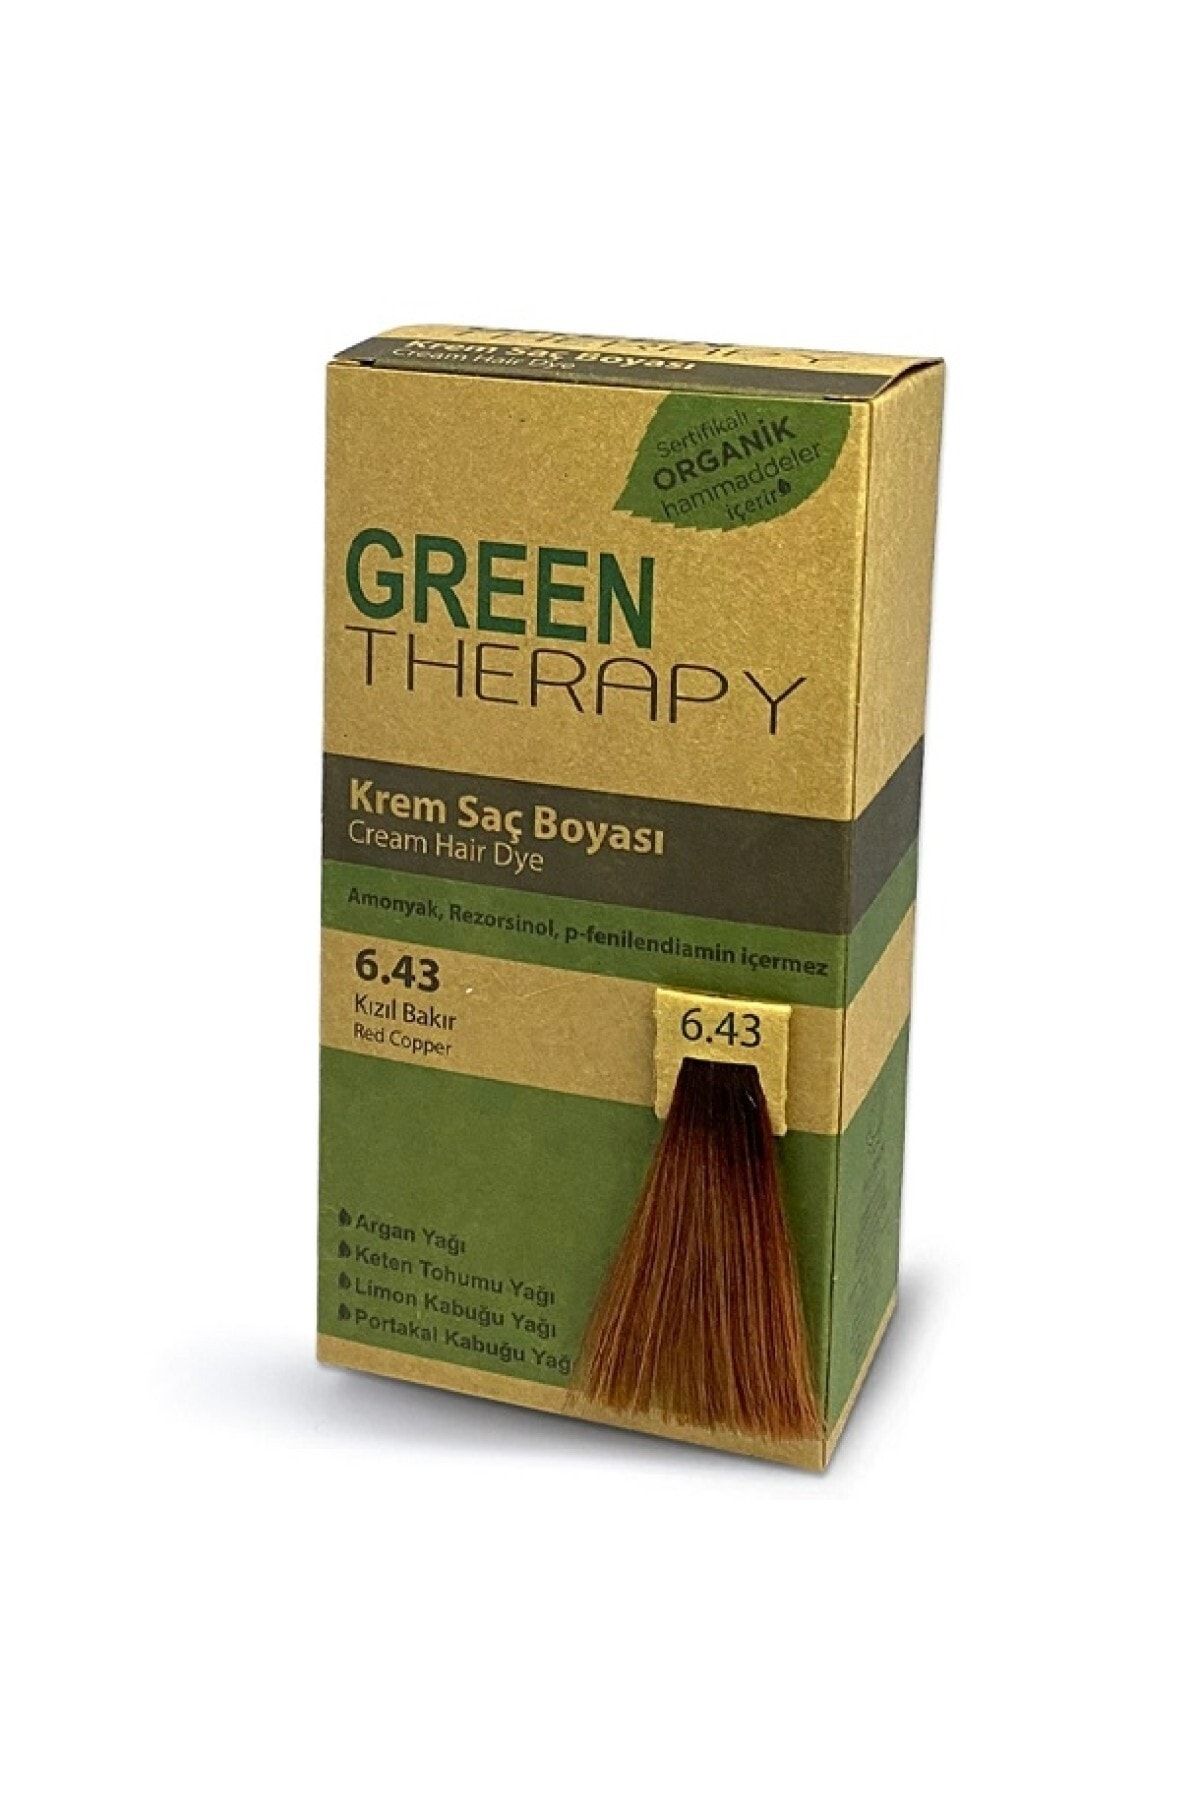 Green Therapy Krem Saç Boyası 6.43 Kızıl Bakır